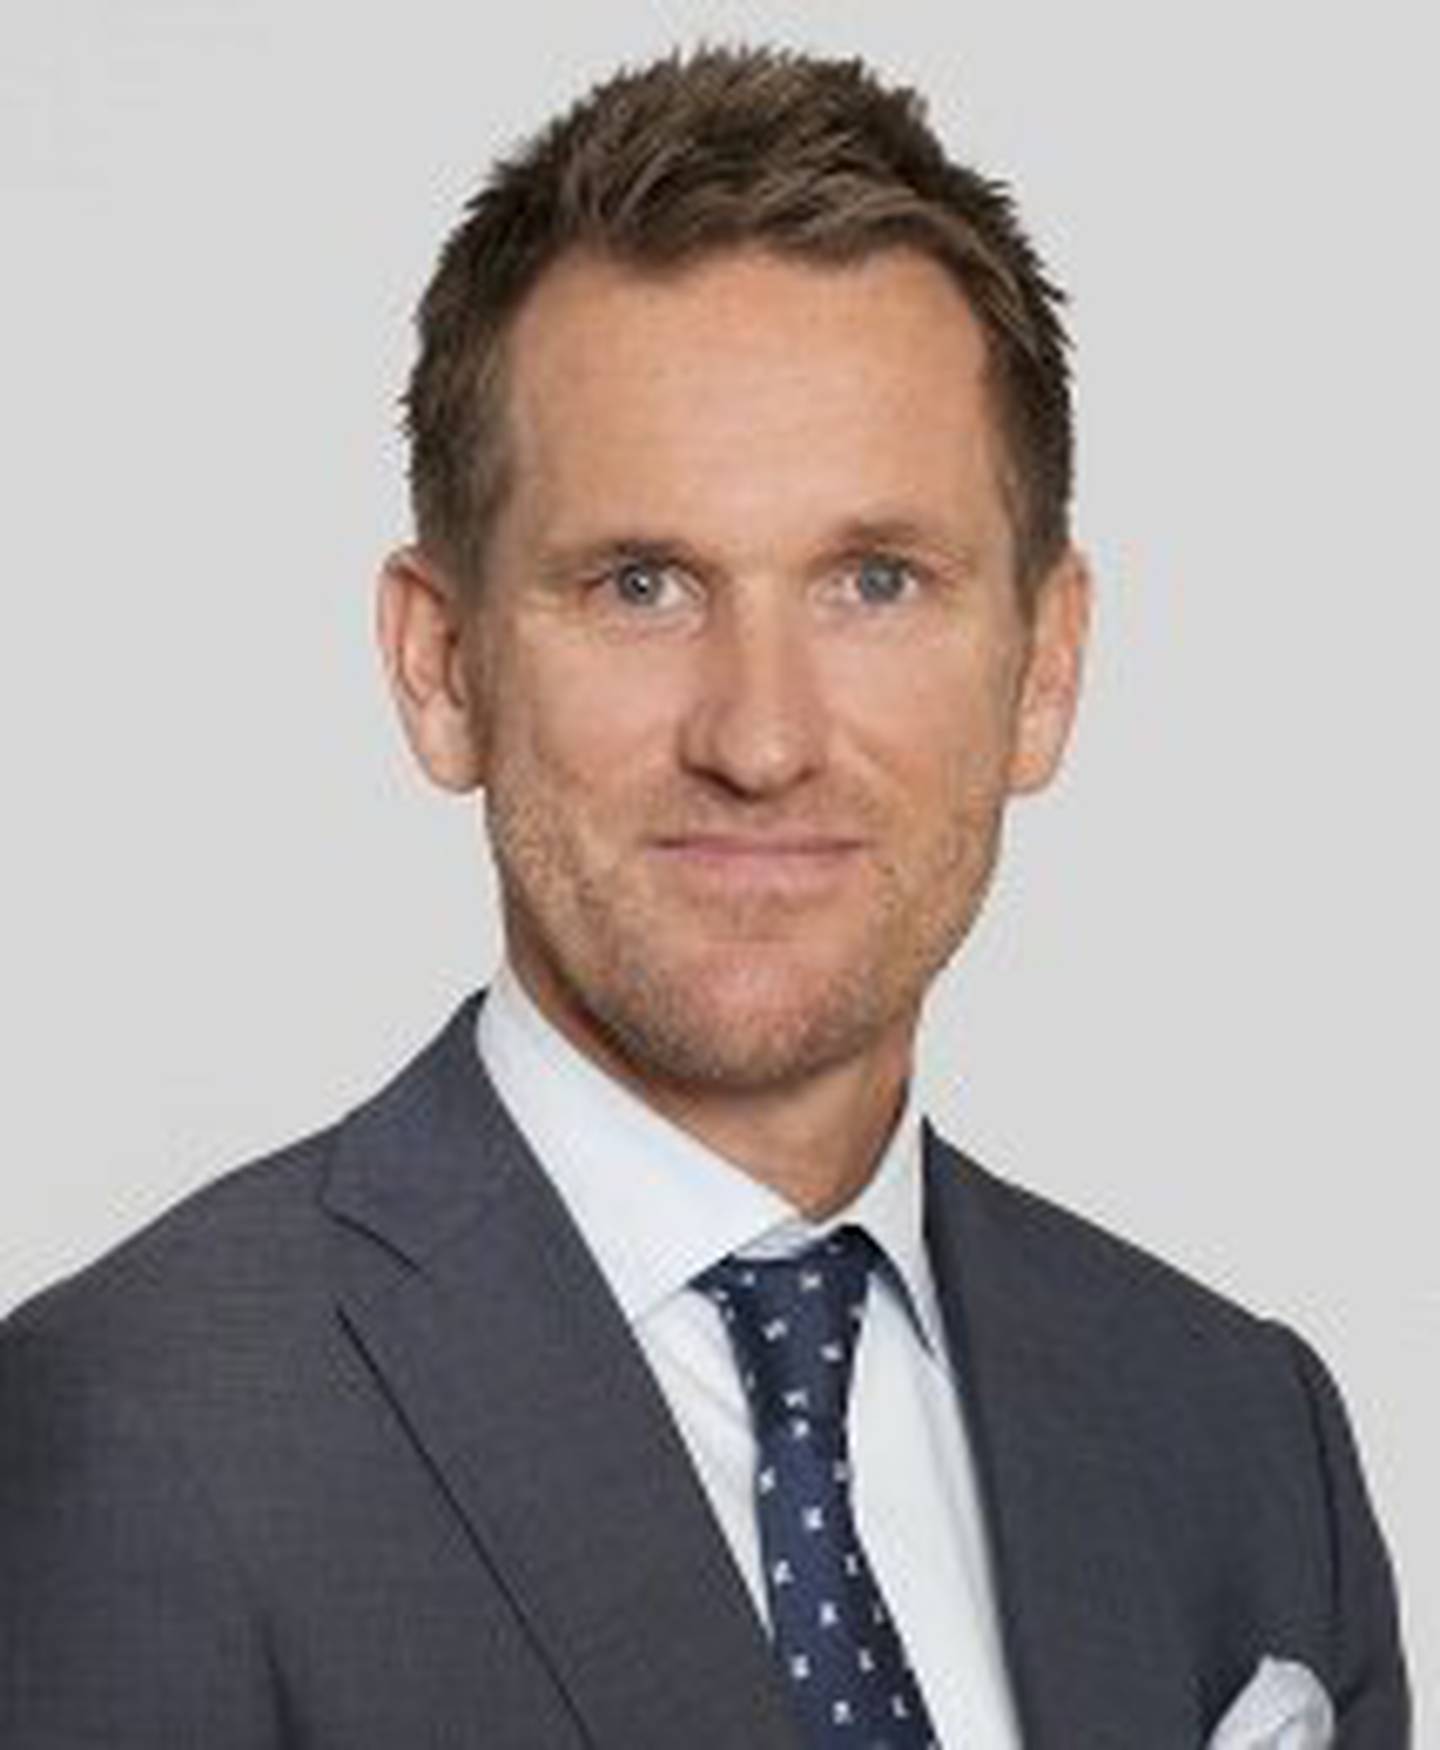 Henrik Emil Høyerholt er senior portfolioforvalter i Alfred Berg Kapitalforvaltning AS